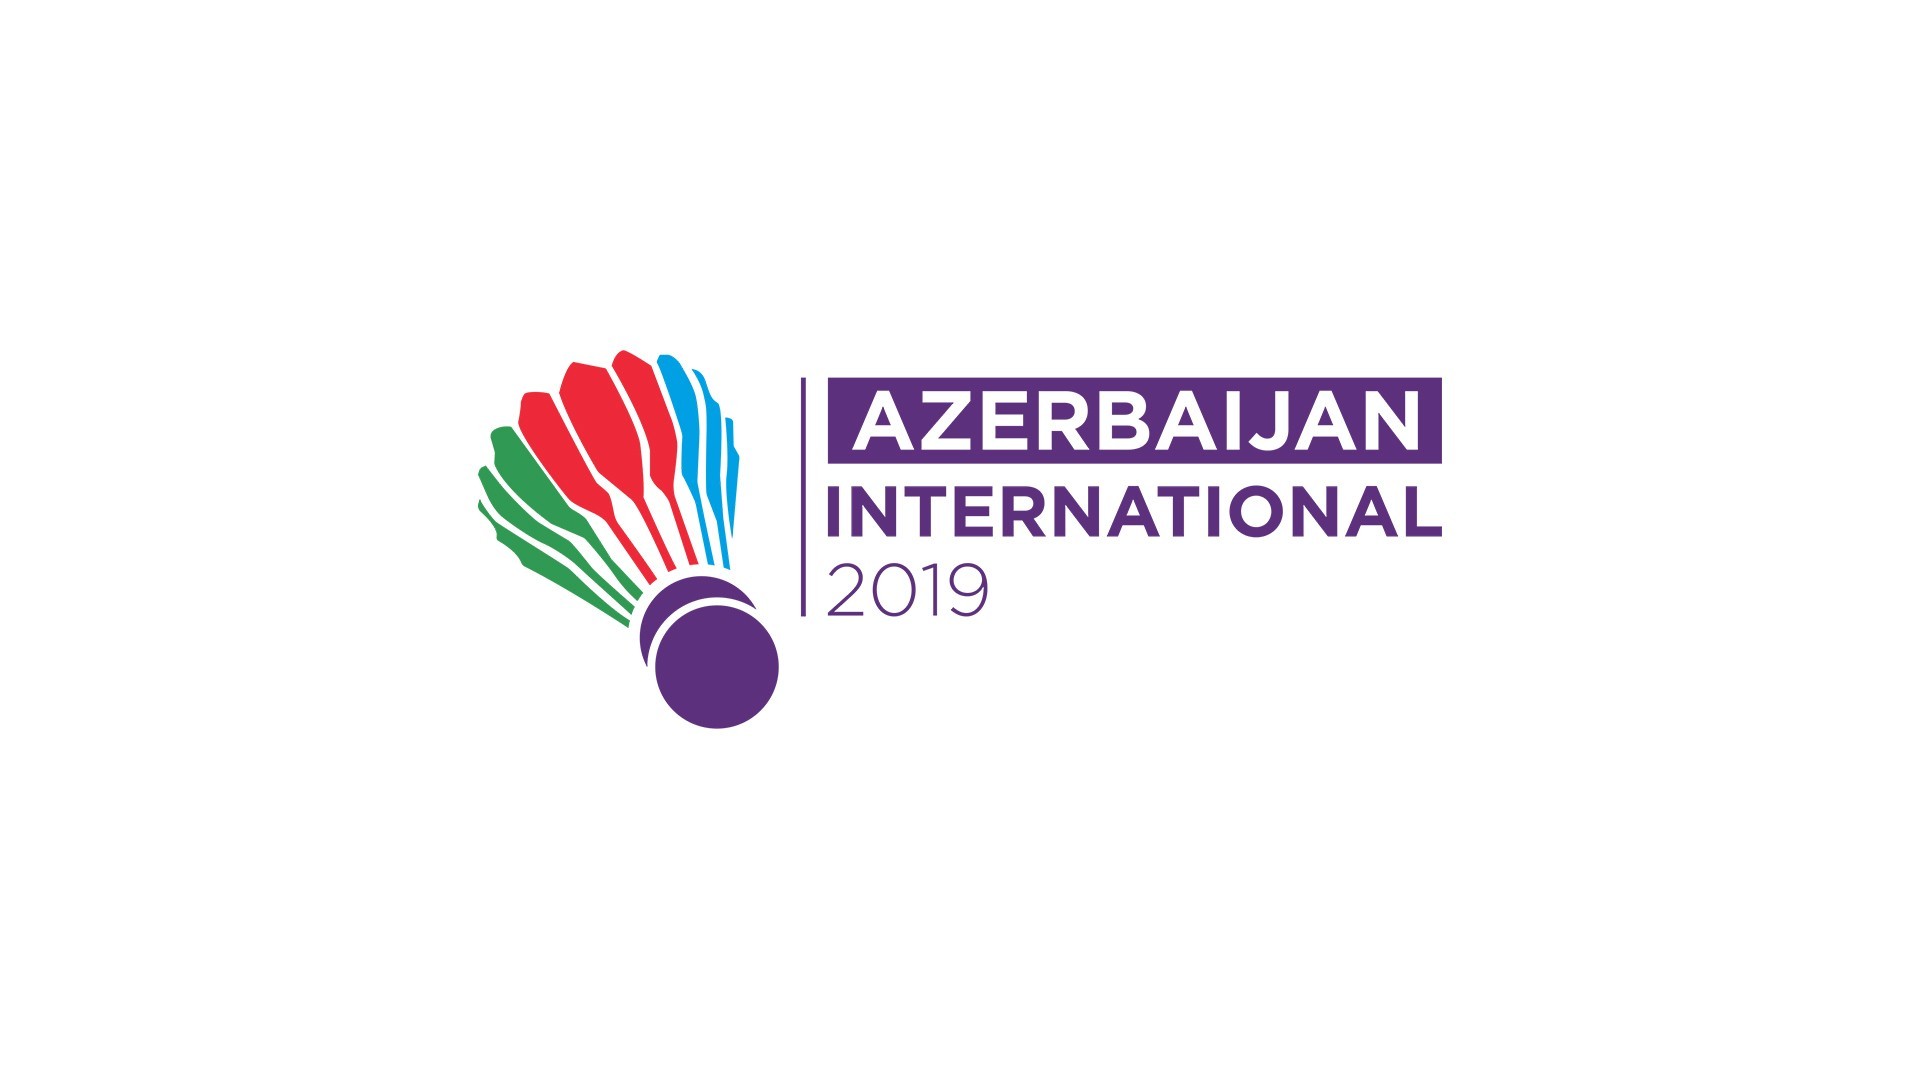 Bakıda beynəlxalq “Azerbaijan International” turniri keçiriləcək